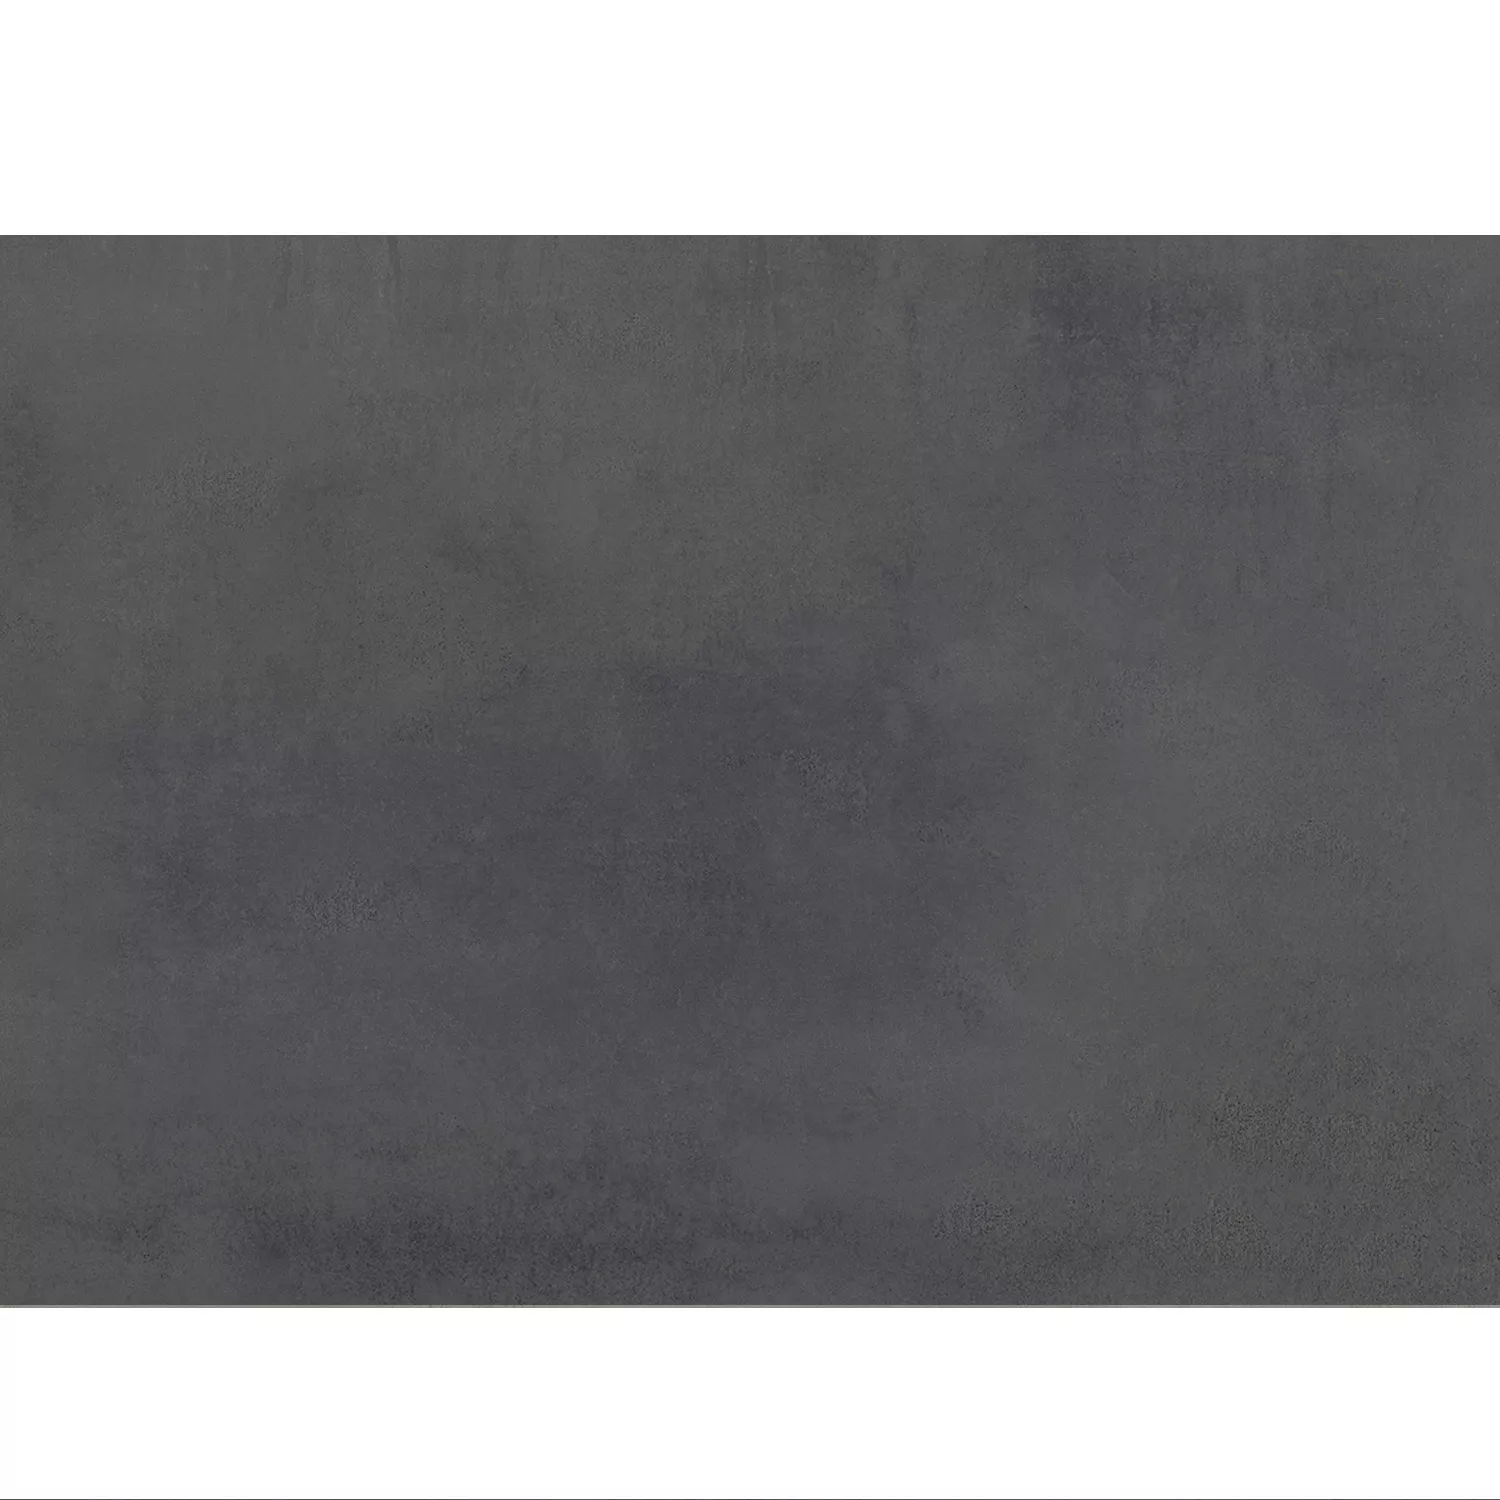 Πλακάκια Δαπέδου Tycoon Συγκεκριμένη Εμφάνιση R10 Ανθρακίτης 120x260cm